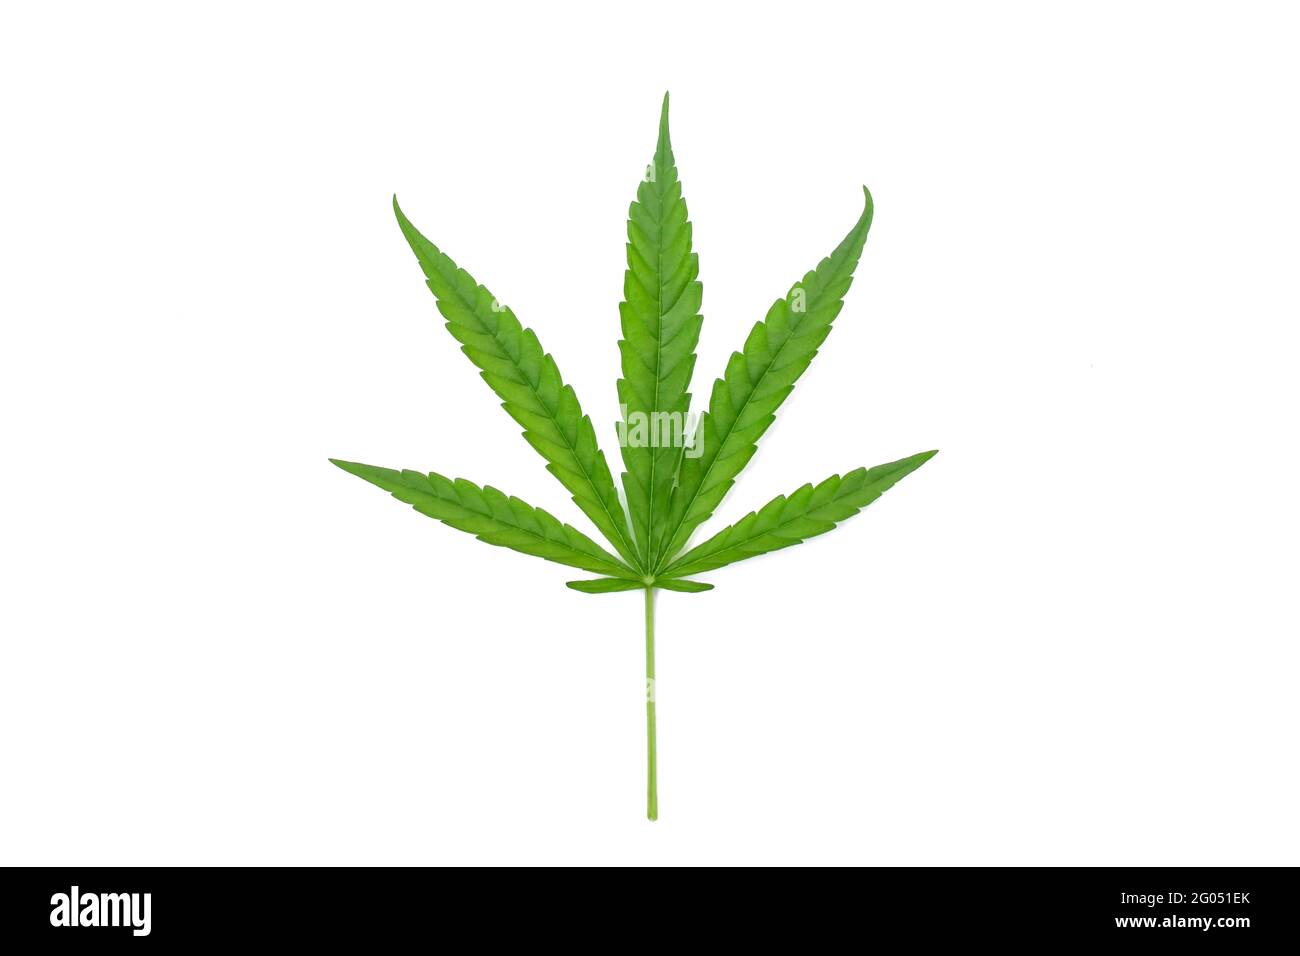 Feuilles de cannabis vertes isolées sur fond blanc. Concept de la culture du cannabis et des feuilles de cannabis médical. Banque D'Images